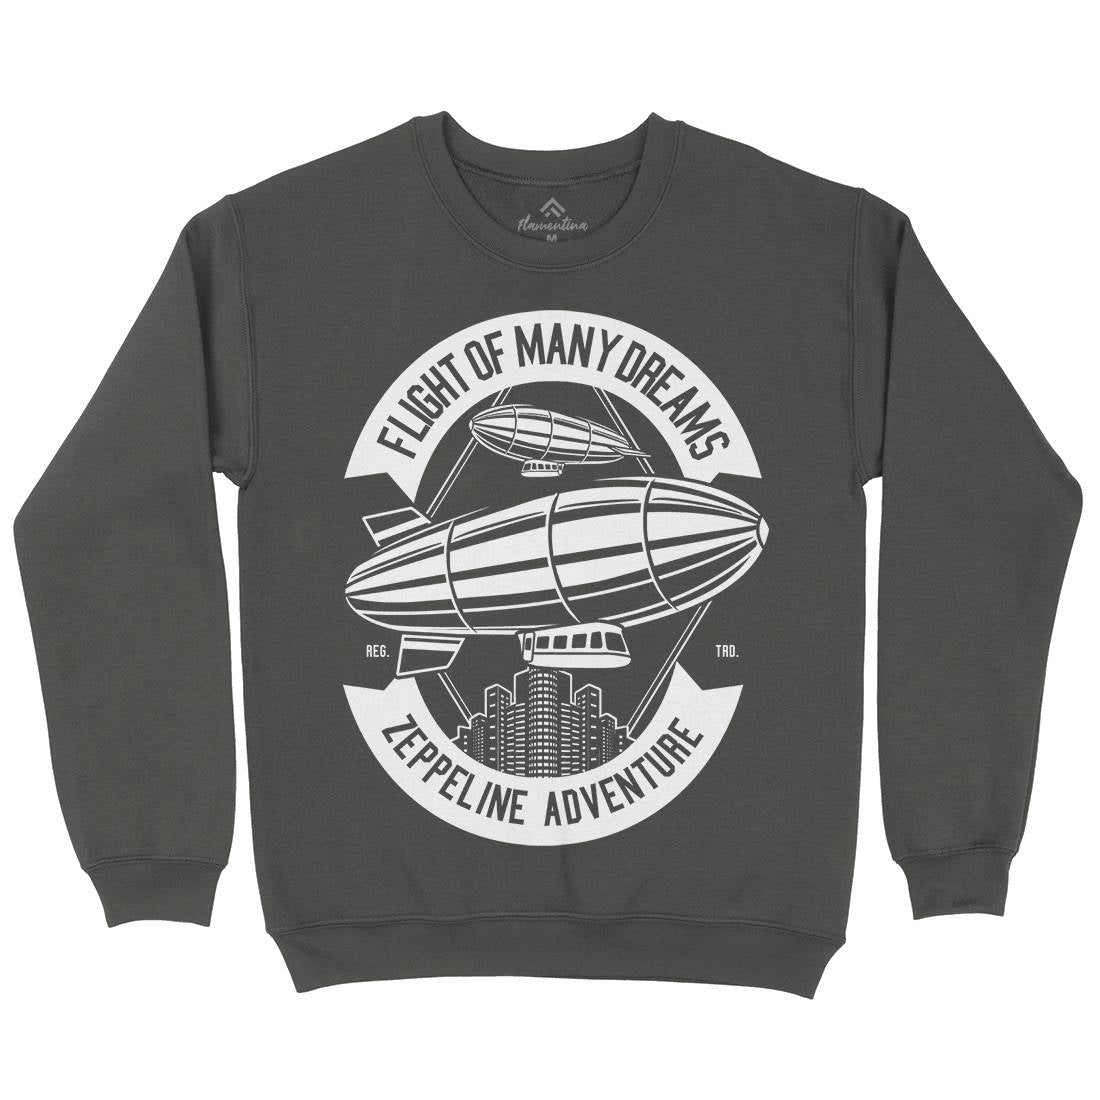 Zeppelin Adventure Kids Crew Neck Sweatshirt Retro B677